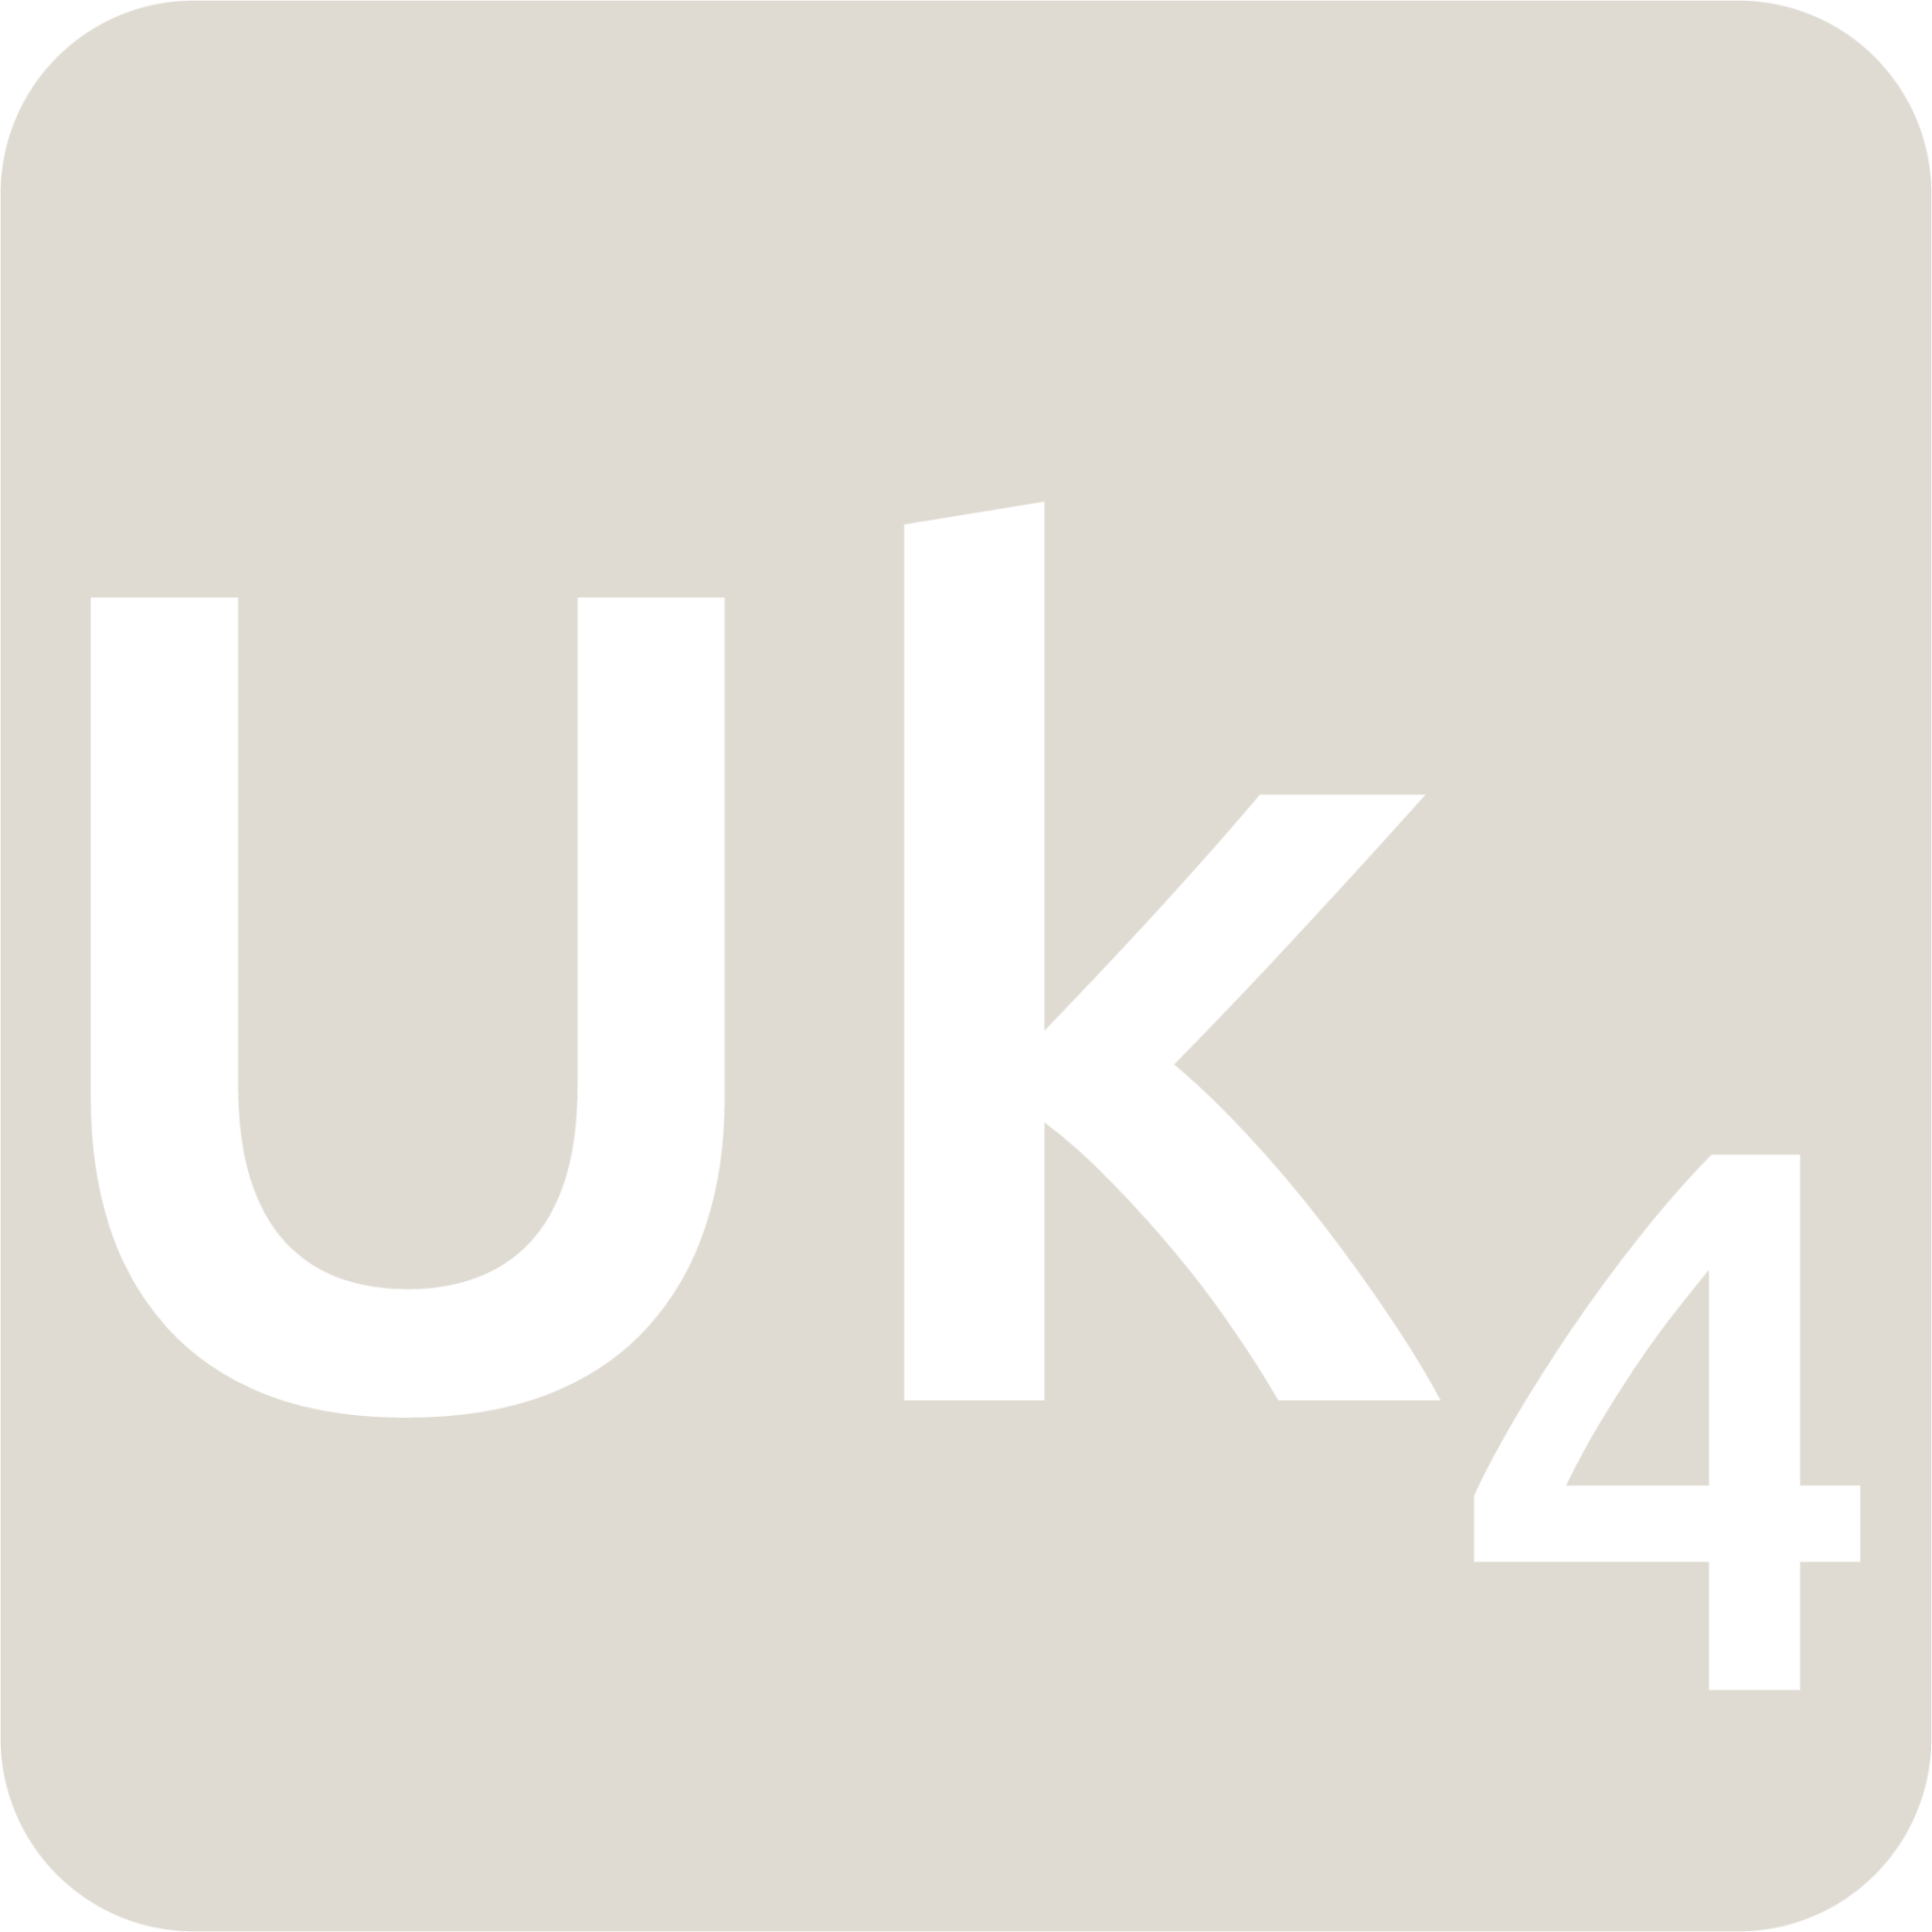 indicator keyboard Uk 4 icon